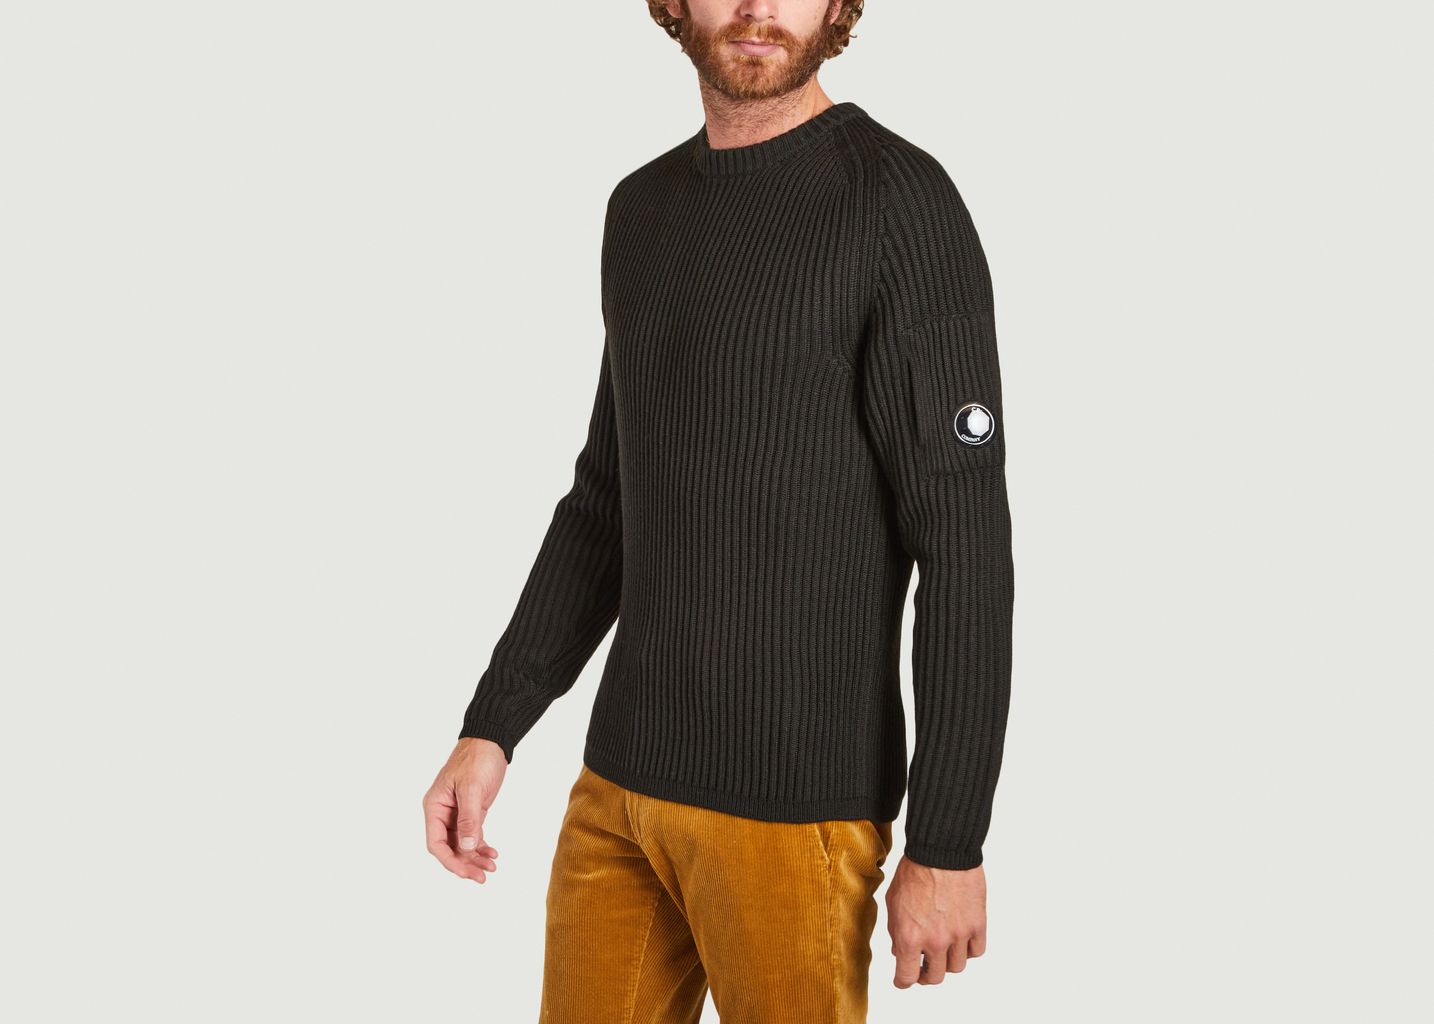 Merino wool sweater - C.P. COMPANY